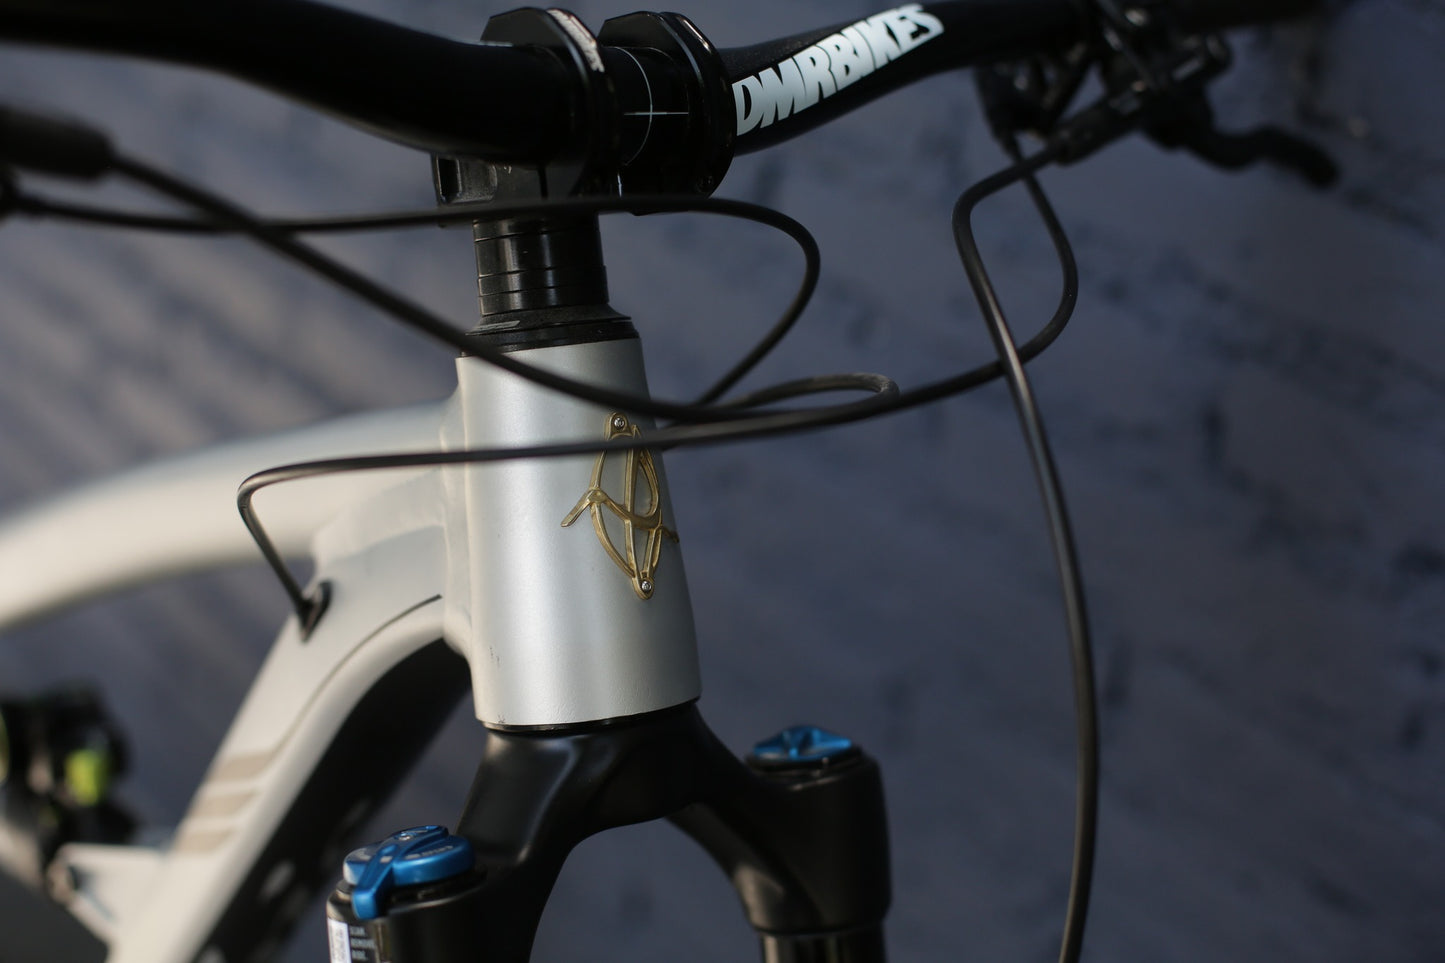 Bicicleta De Montaña Doble Suspension Ibis Rimpo 29" Talla Mediana Nueva